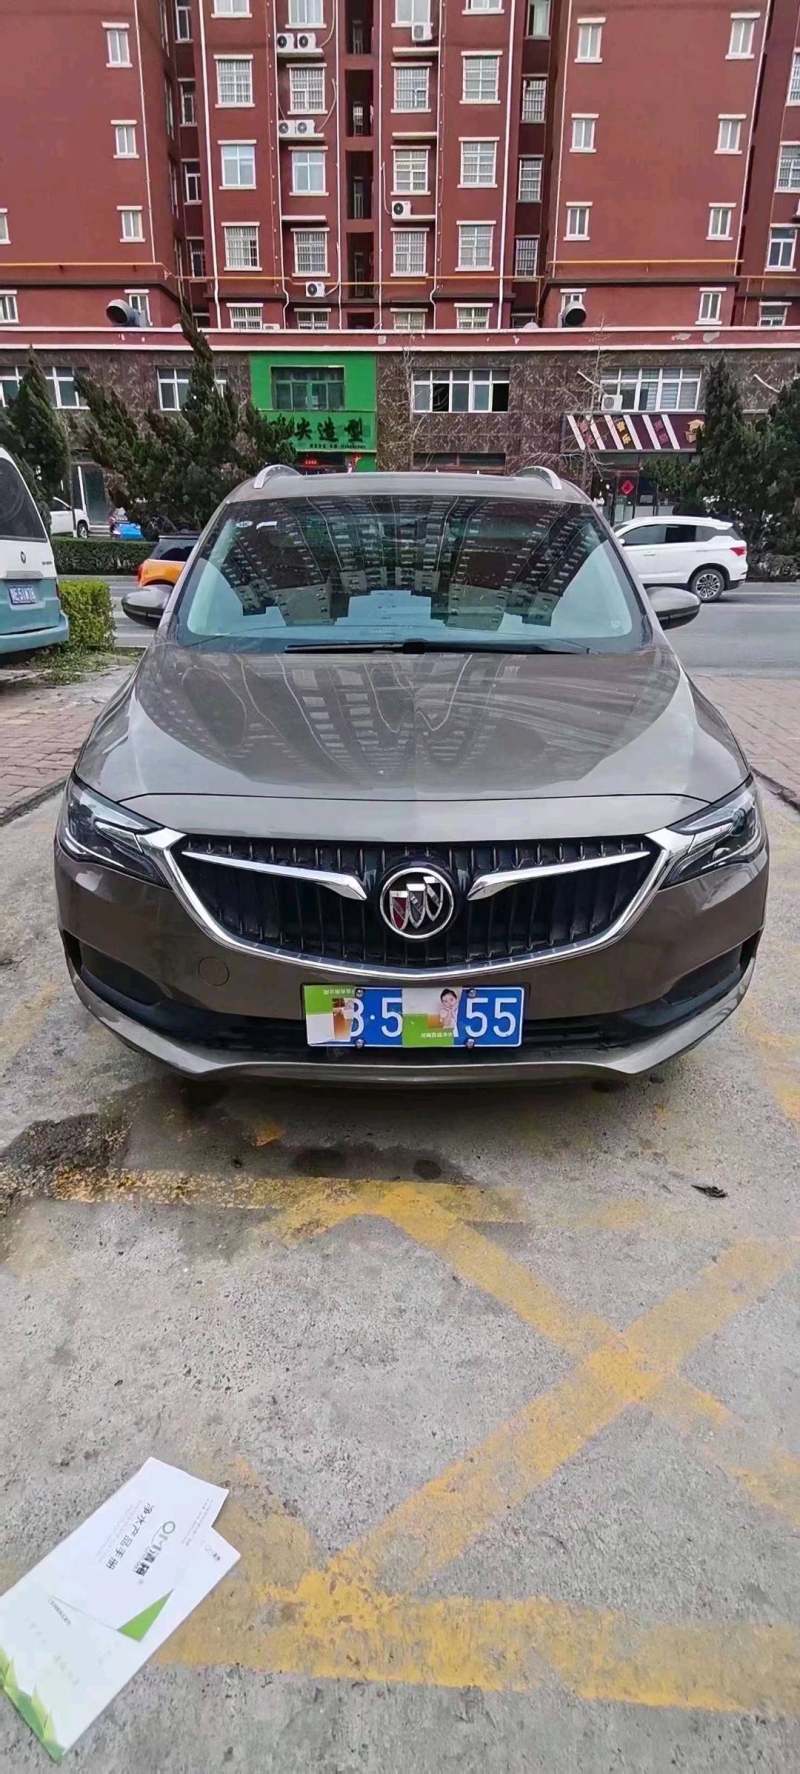 河南省郑州市抵押车交易市场